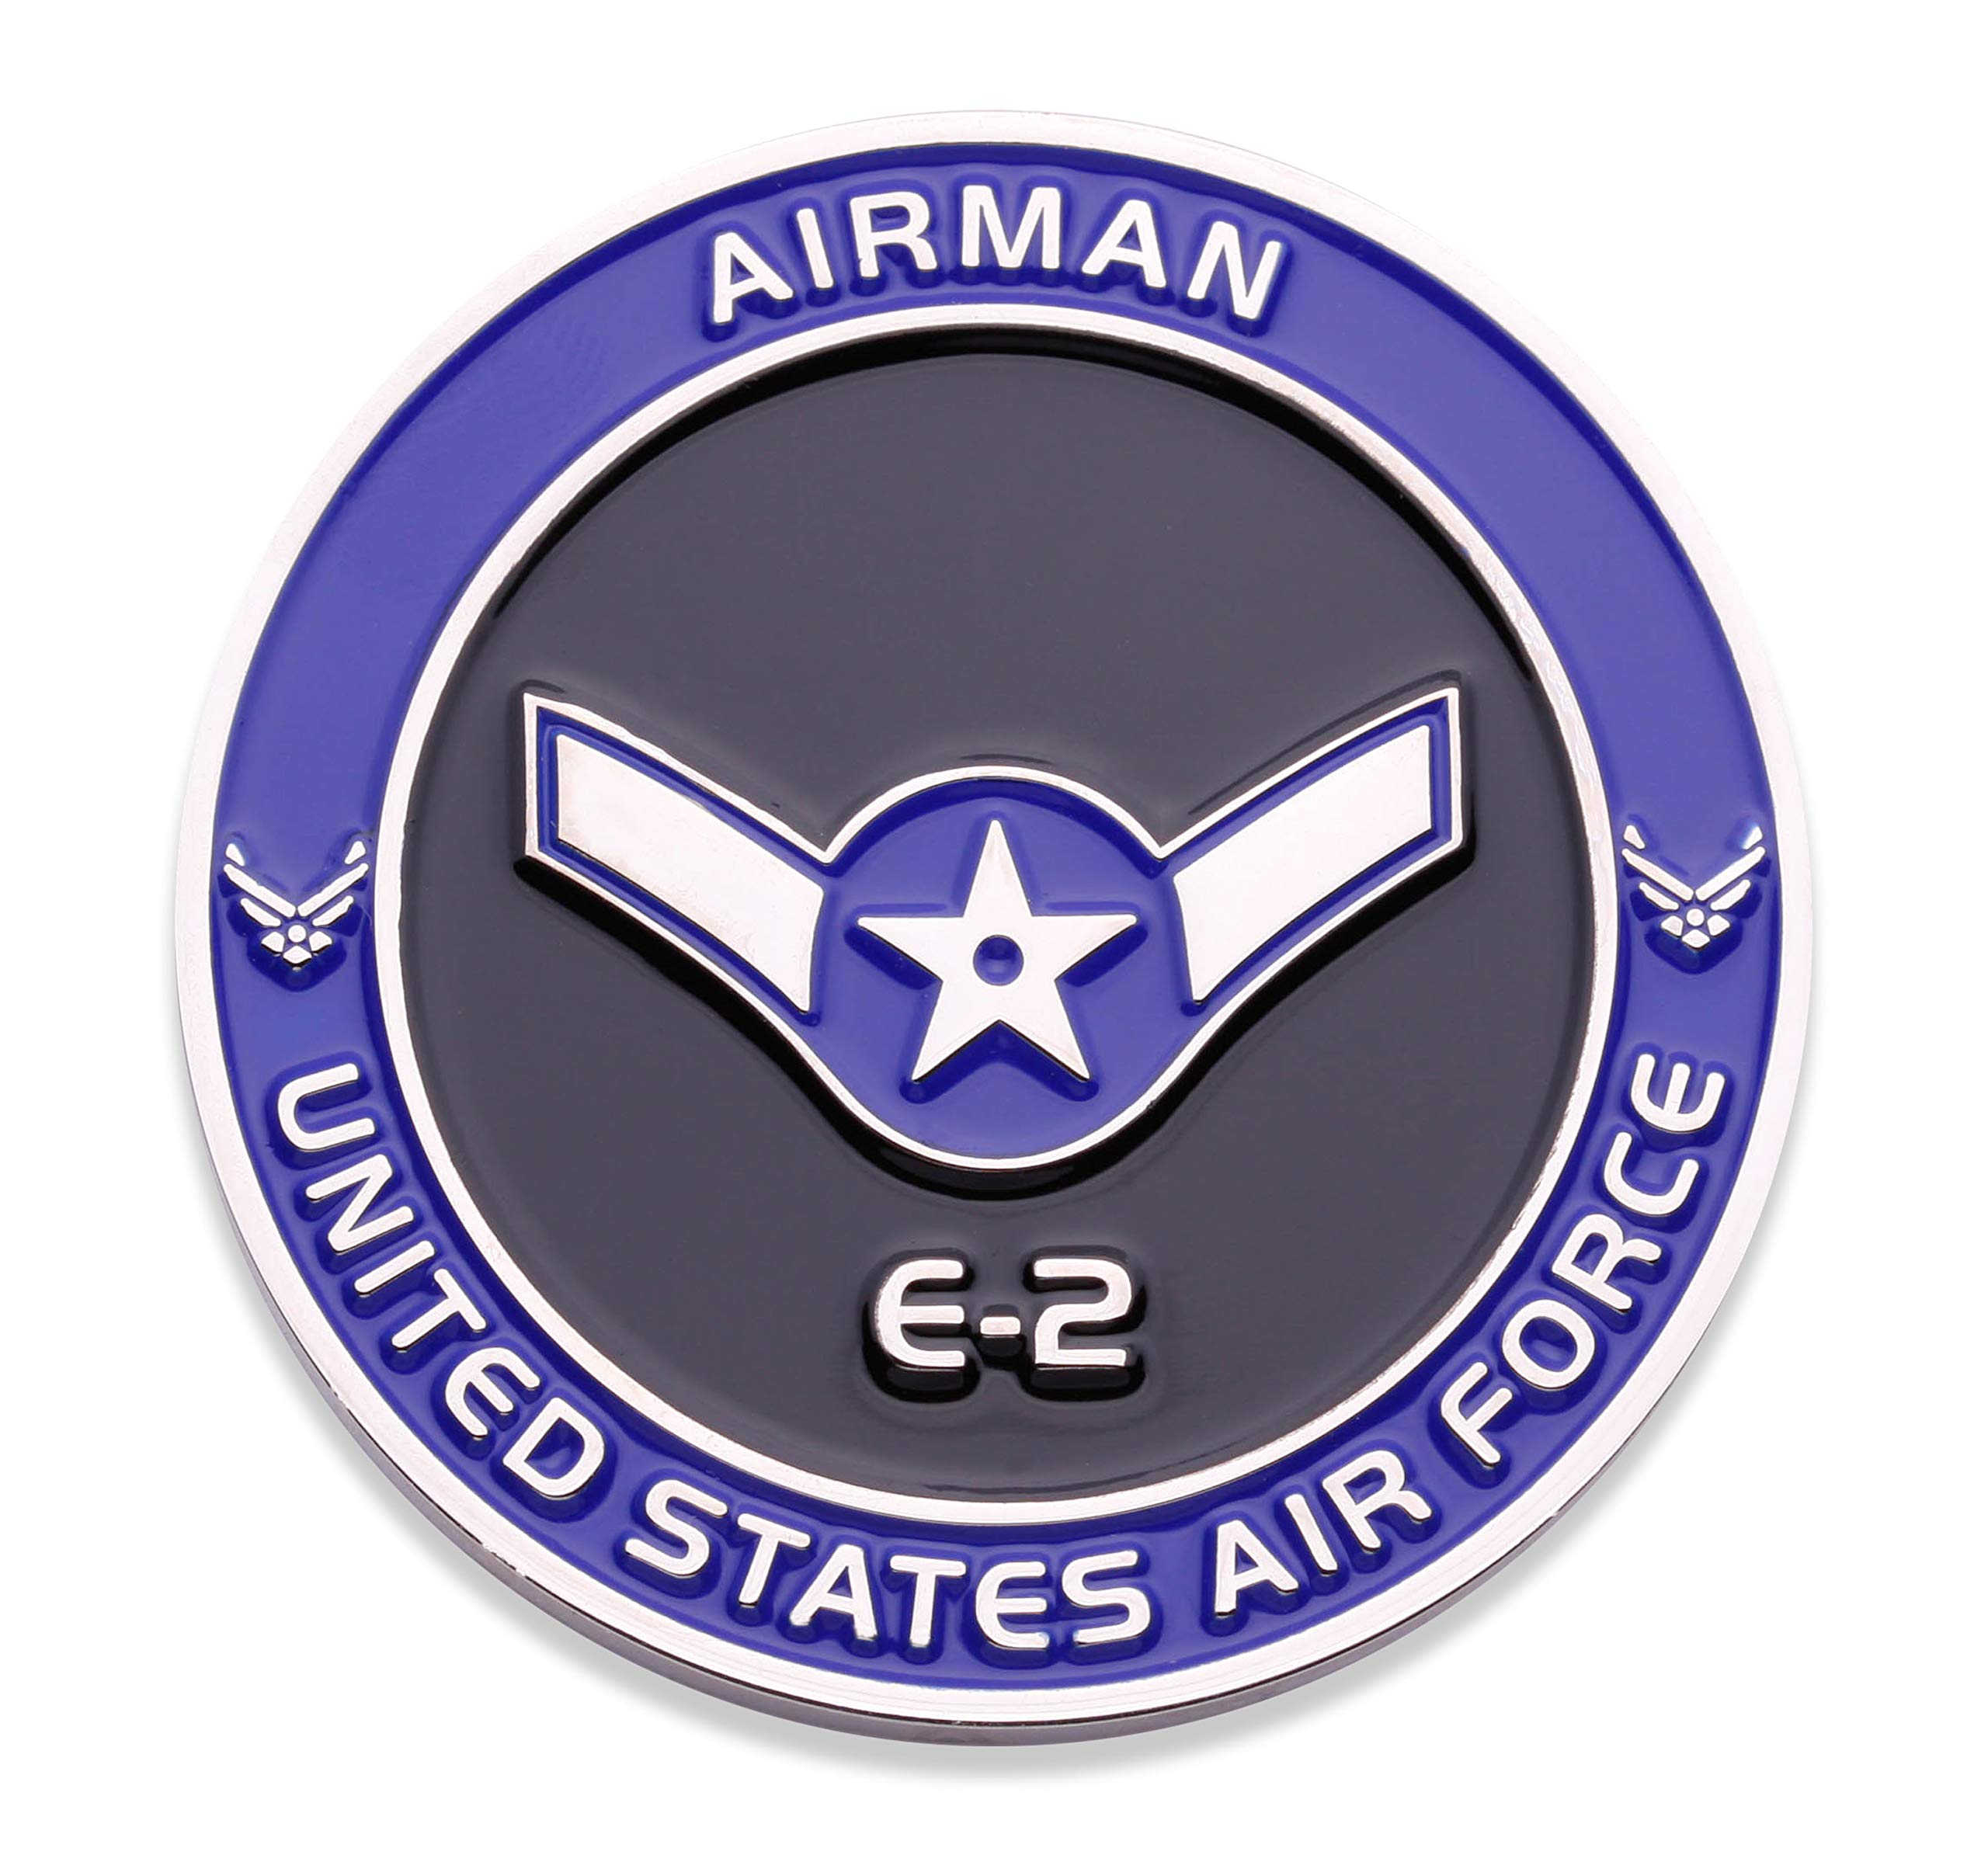 Air Force Airman E2 Challenge Coin United States Air Force Airman Rank